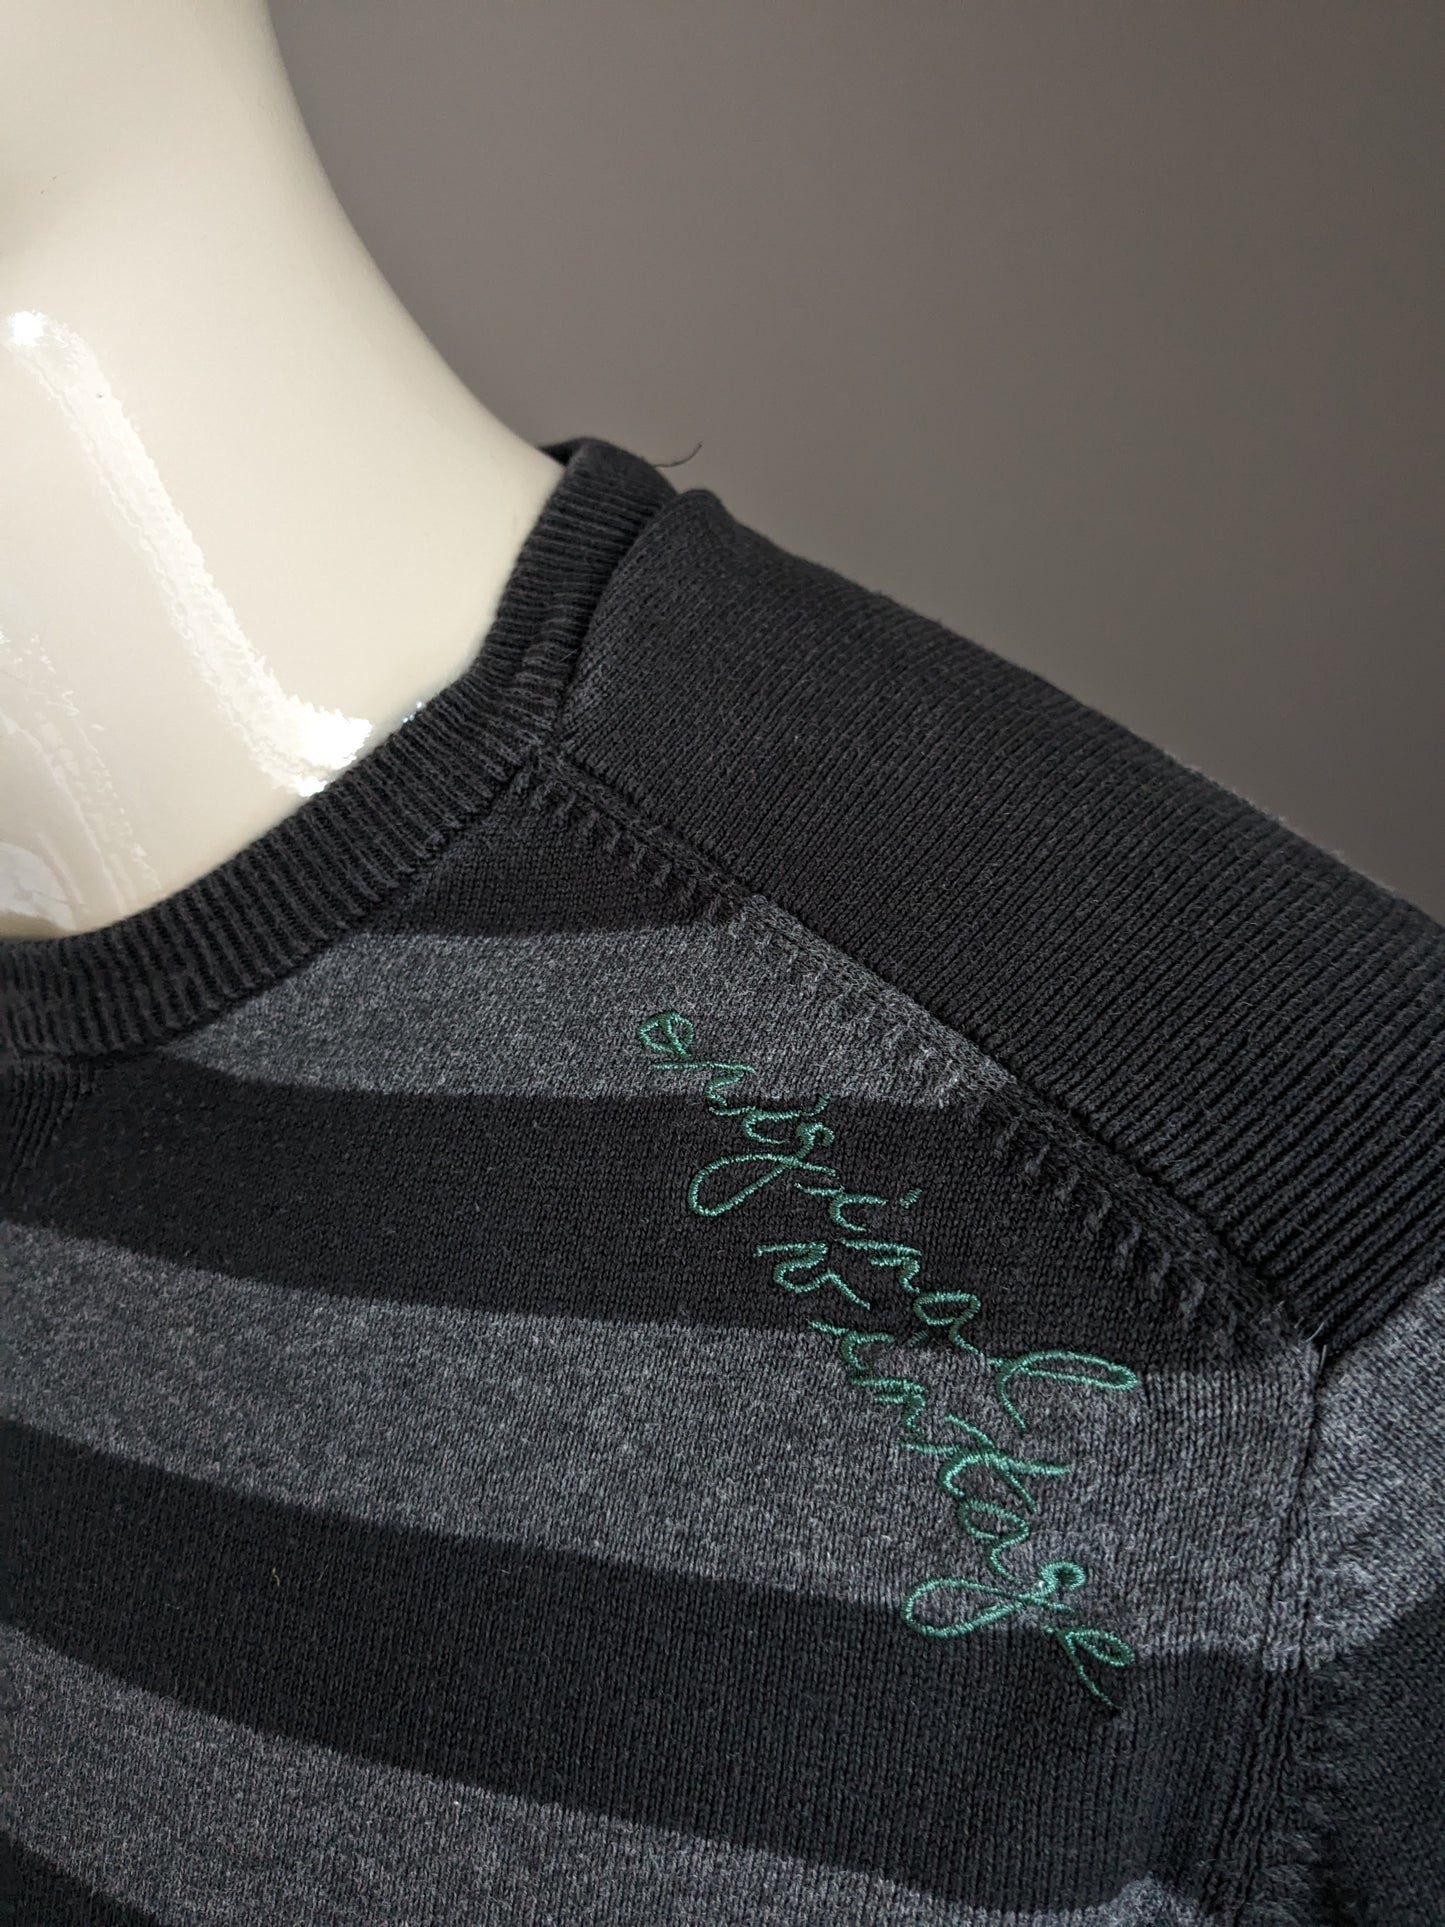 Manguun casual trui met elleboogstukken. Zwart grijs gestreept. Maat XL.